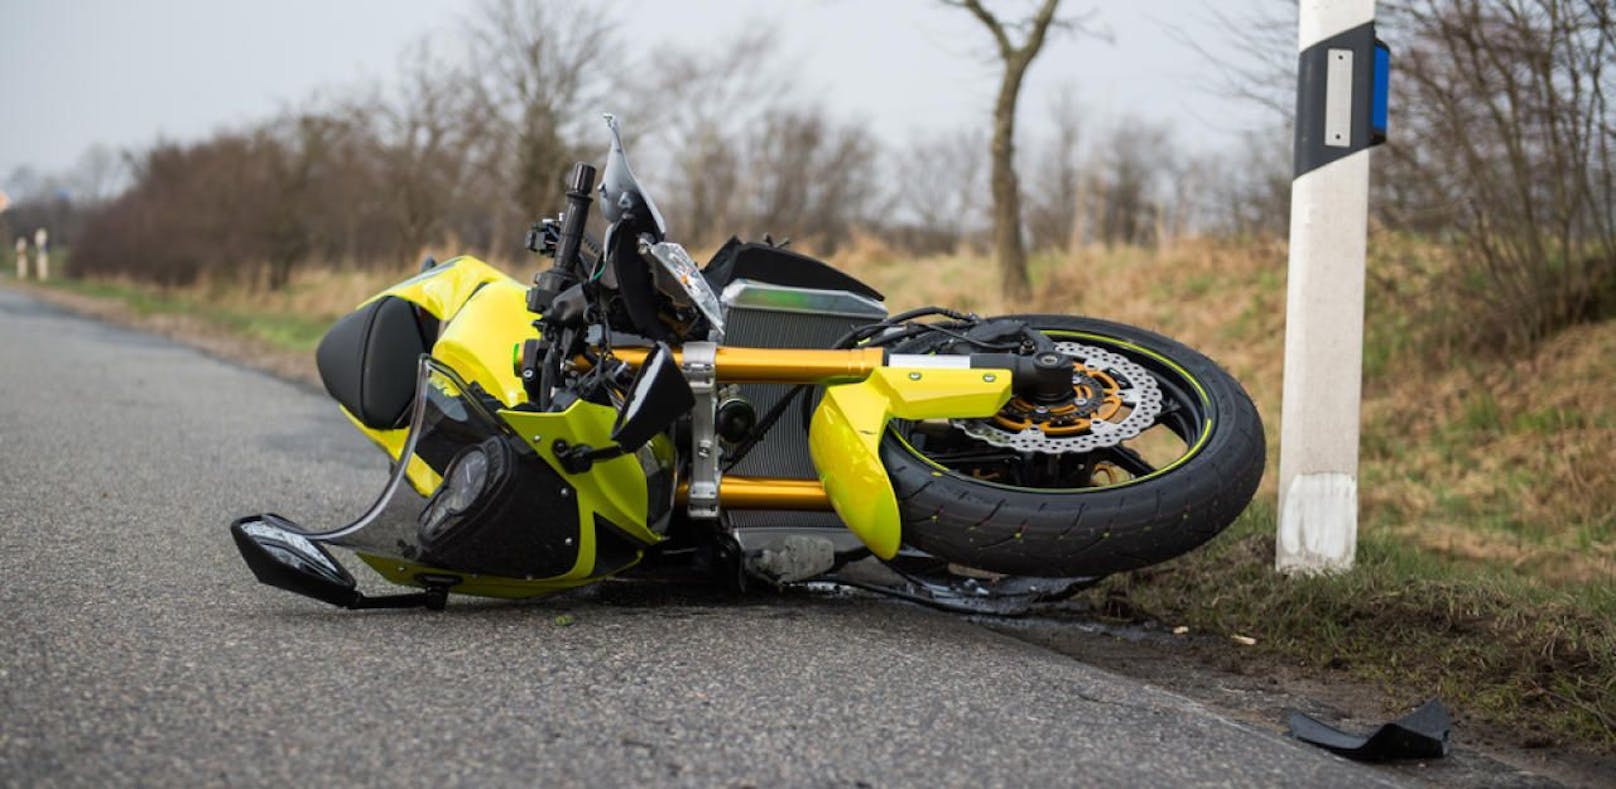 Der Motorradlenker wurde bei dem Unfall schwer verletzt